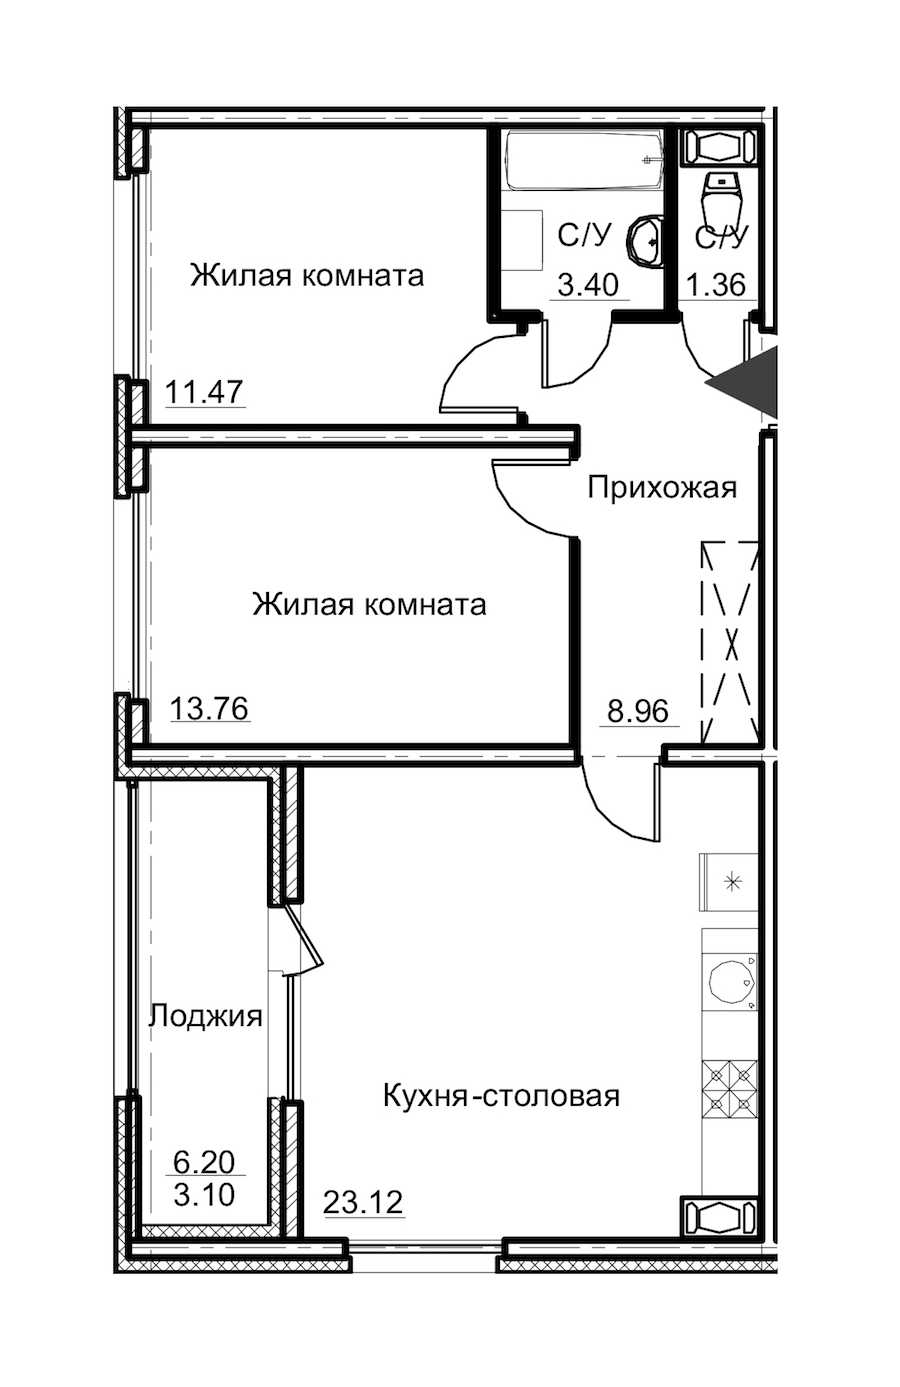 Двухкомнатная квартира в : площадь 65.17 м2 , этаж: 6 – купить в Санкт-Петербурге